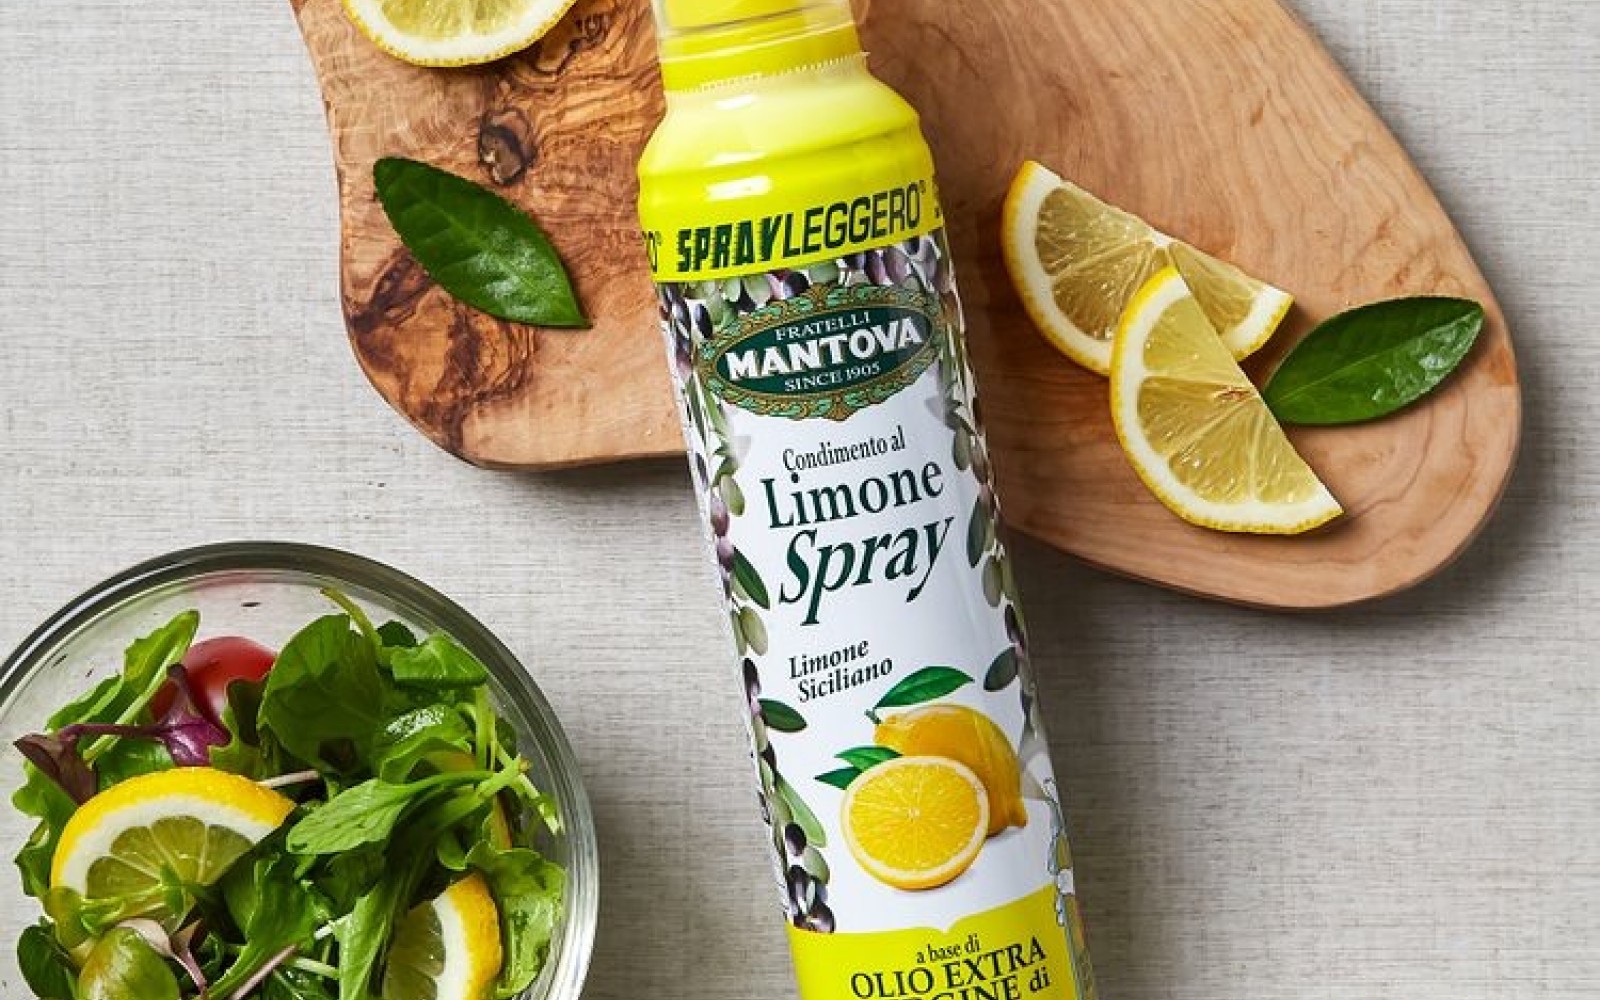 A Mantova citrom ízű olajspray egy könnyen használható fújható olaj, mely friss citrom ízt kölcsönöz az ételeknek